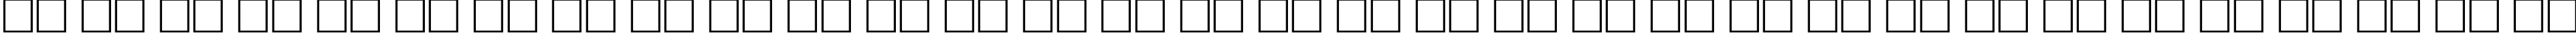 Пример написания русского алфавита шрифтом Dynar Medium